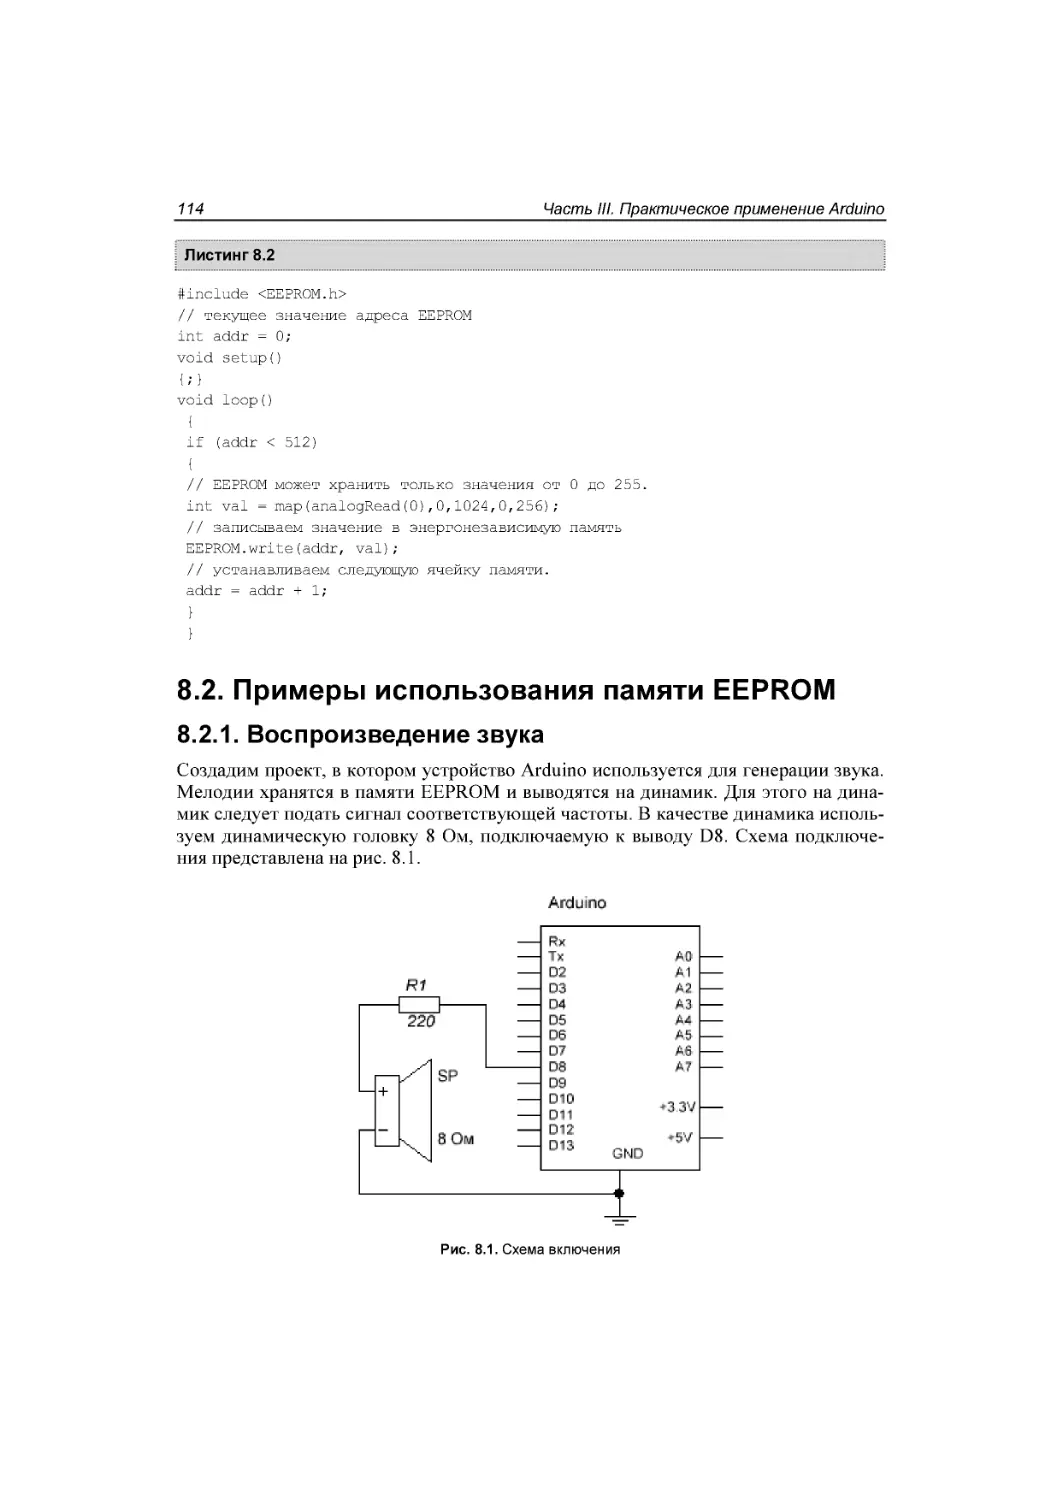 ﻿8.2. Примеры использования памяти EEPROM